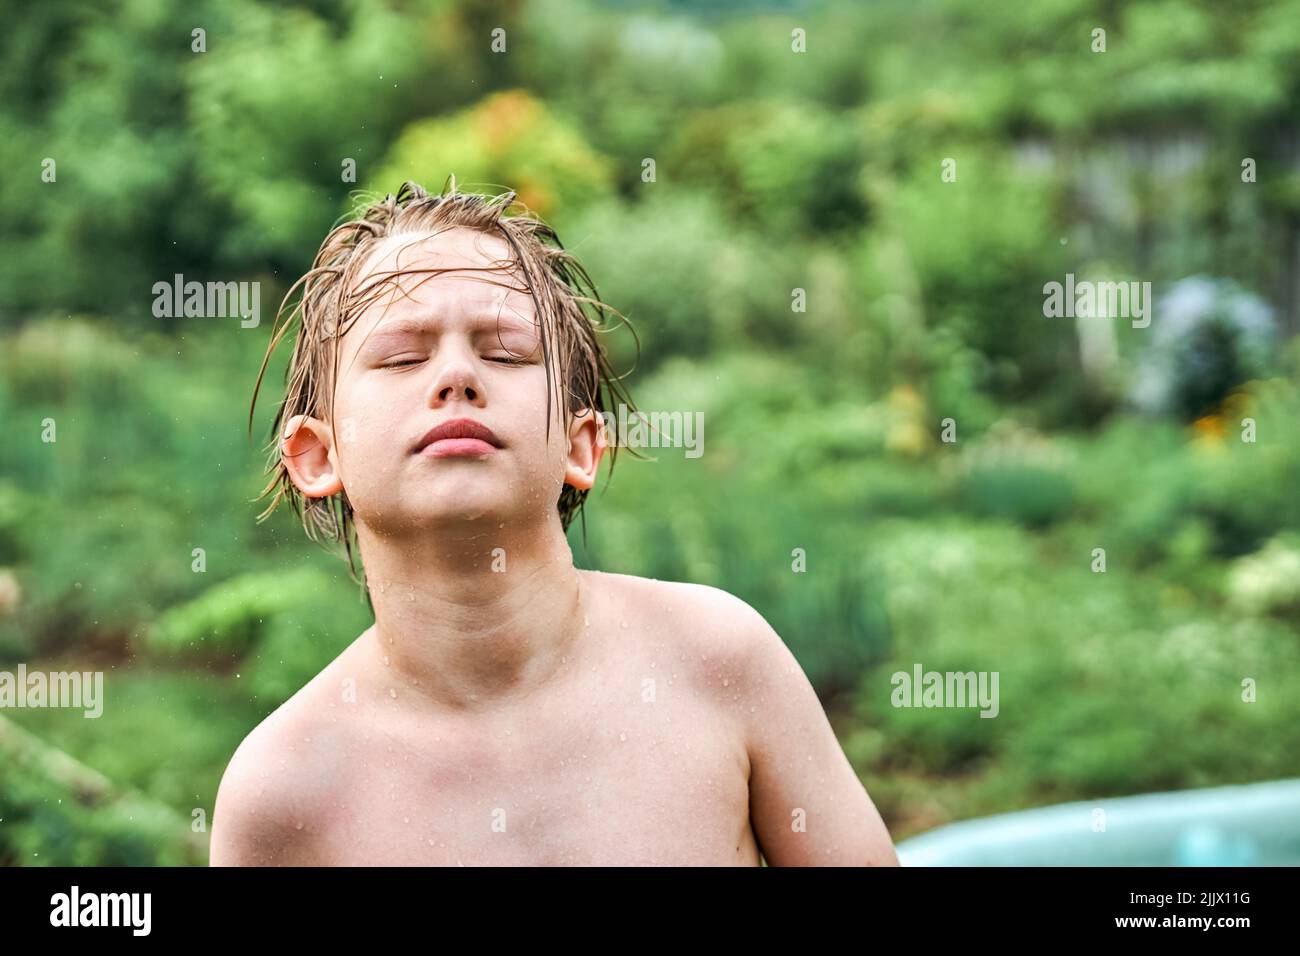 L'écolier mignon aux cheveux blonds humides se dresse contre les arbres luxuriants et la verdure en campagne. Portrait d'un garçon décontracté en gros plan Banque D'Images